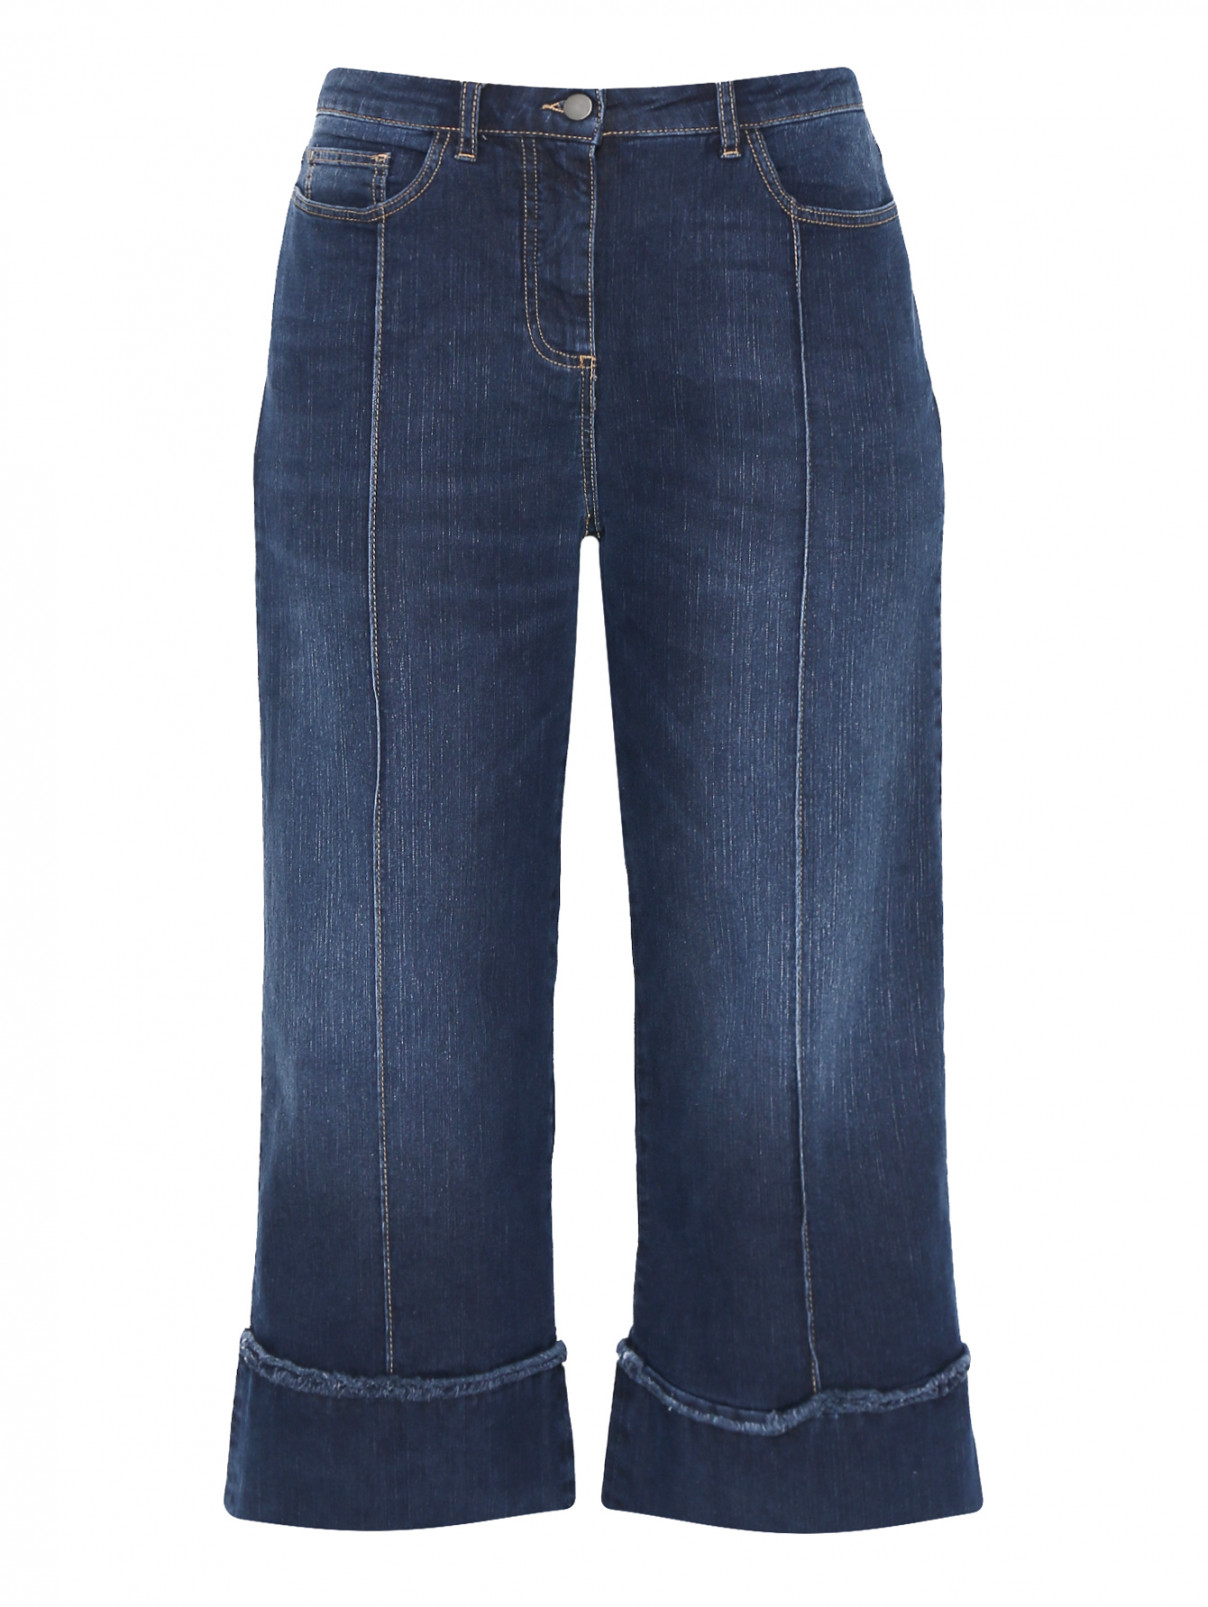 Укороченные джинсы с декоративными отворотами Persona by Marina Rinaldi  –  Общий вид  – Цвет:  Синий